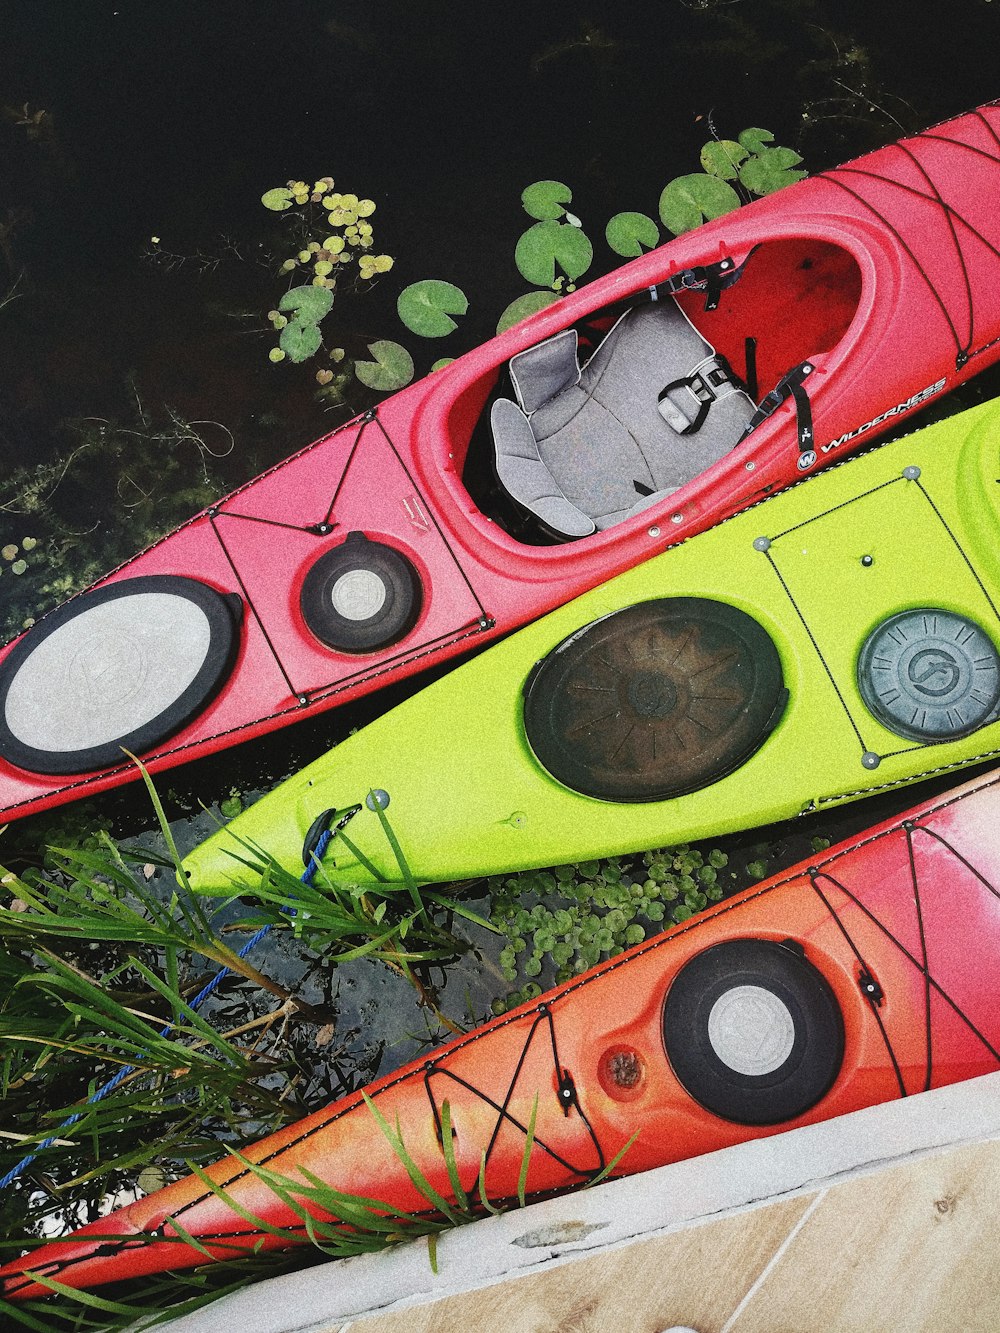 deux kayaks rouges et un jaune sur plan d’eau